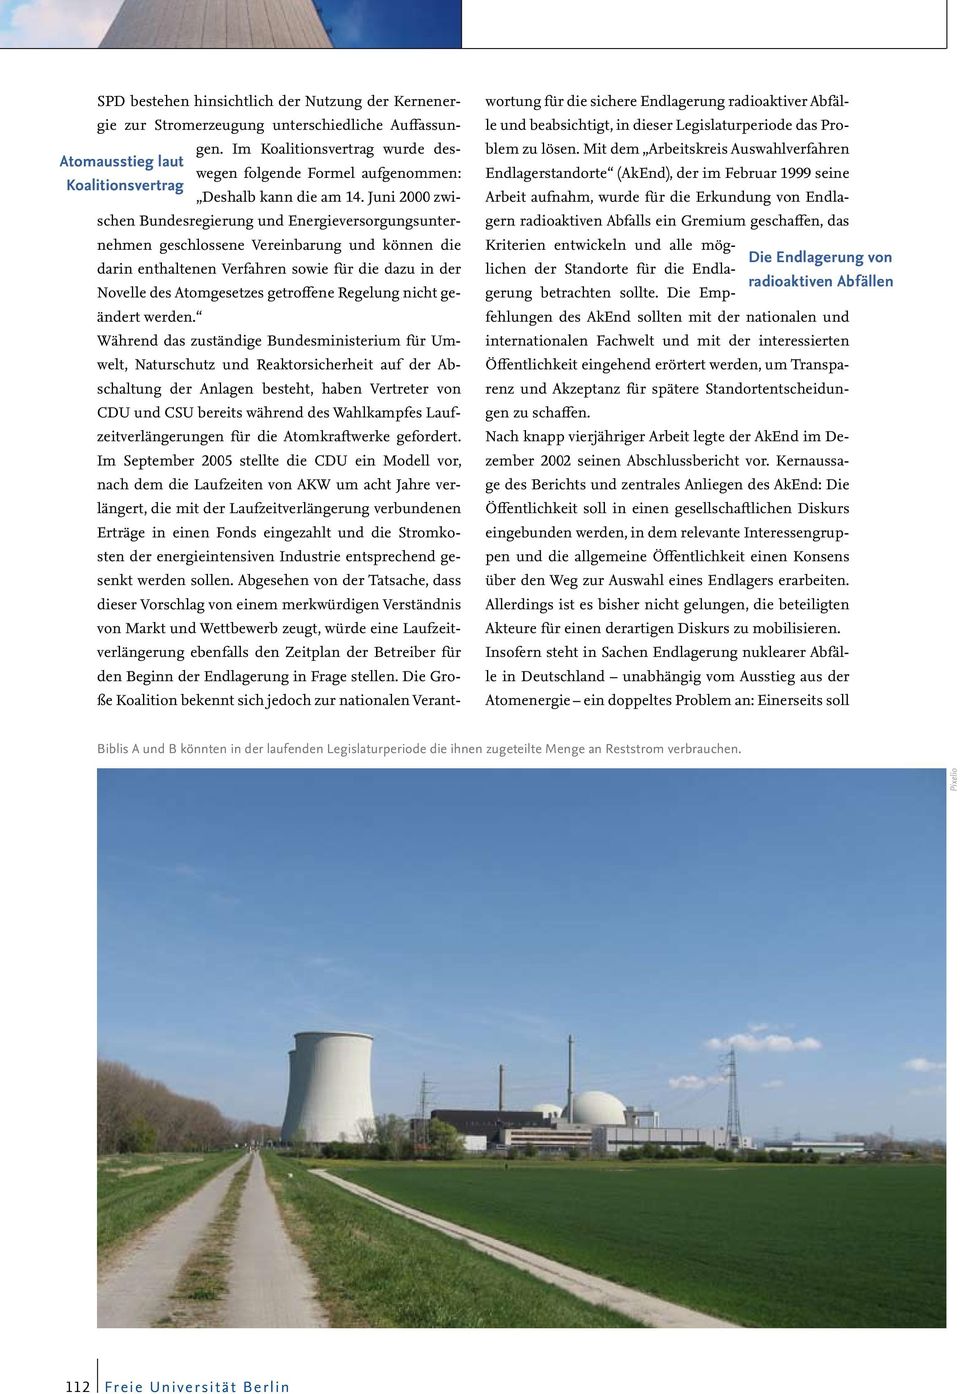 Juni 2000 zwischen Bundesregierung und Energieversorgungsunternehmen geschlossene Vereinbarung und können die darin enthaltenen Verfahren sowie für die dazu in der Novelle des Atomgesetzes getroffene